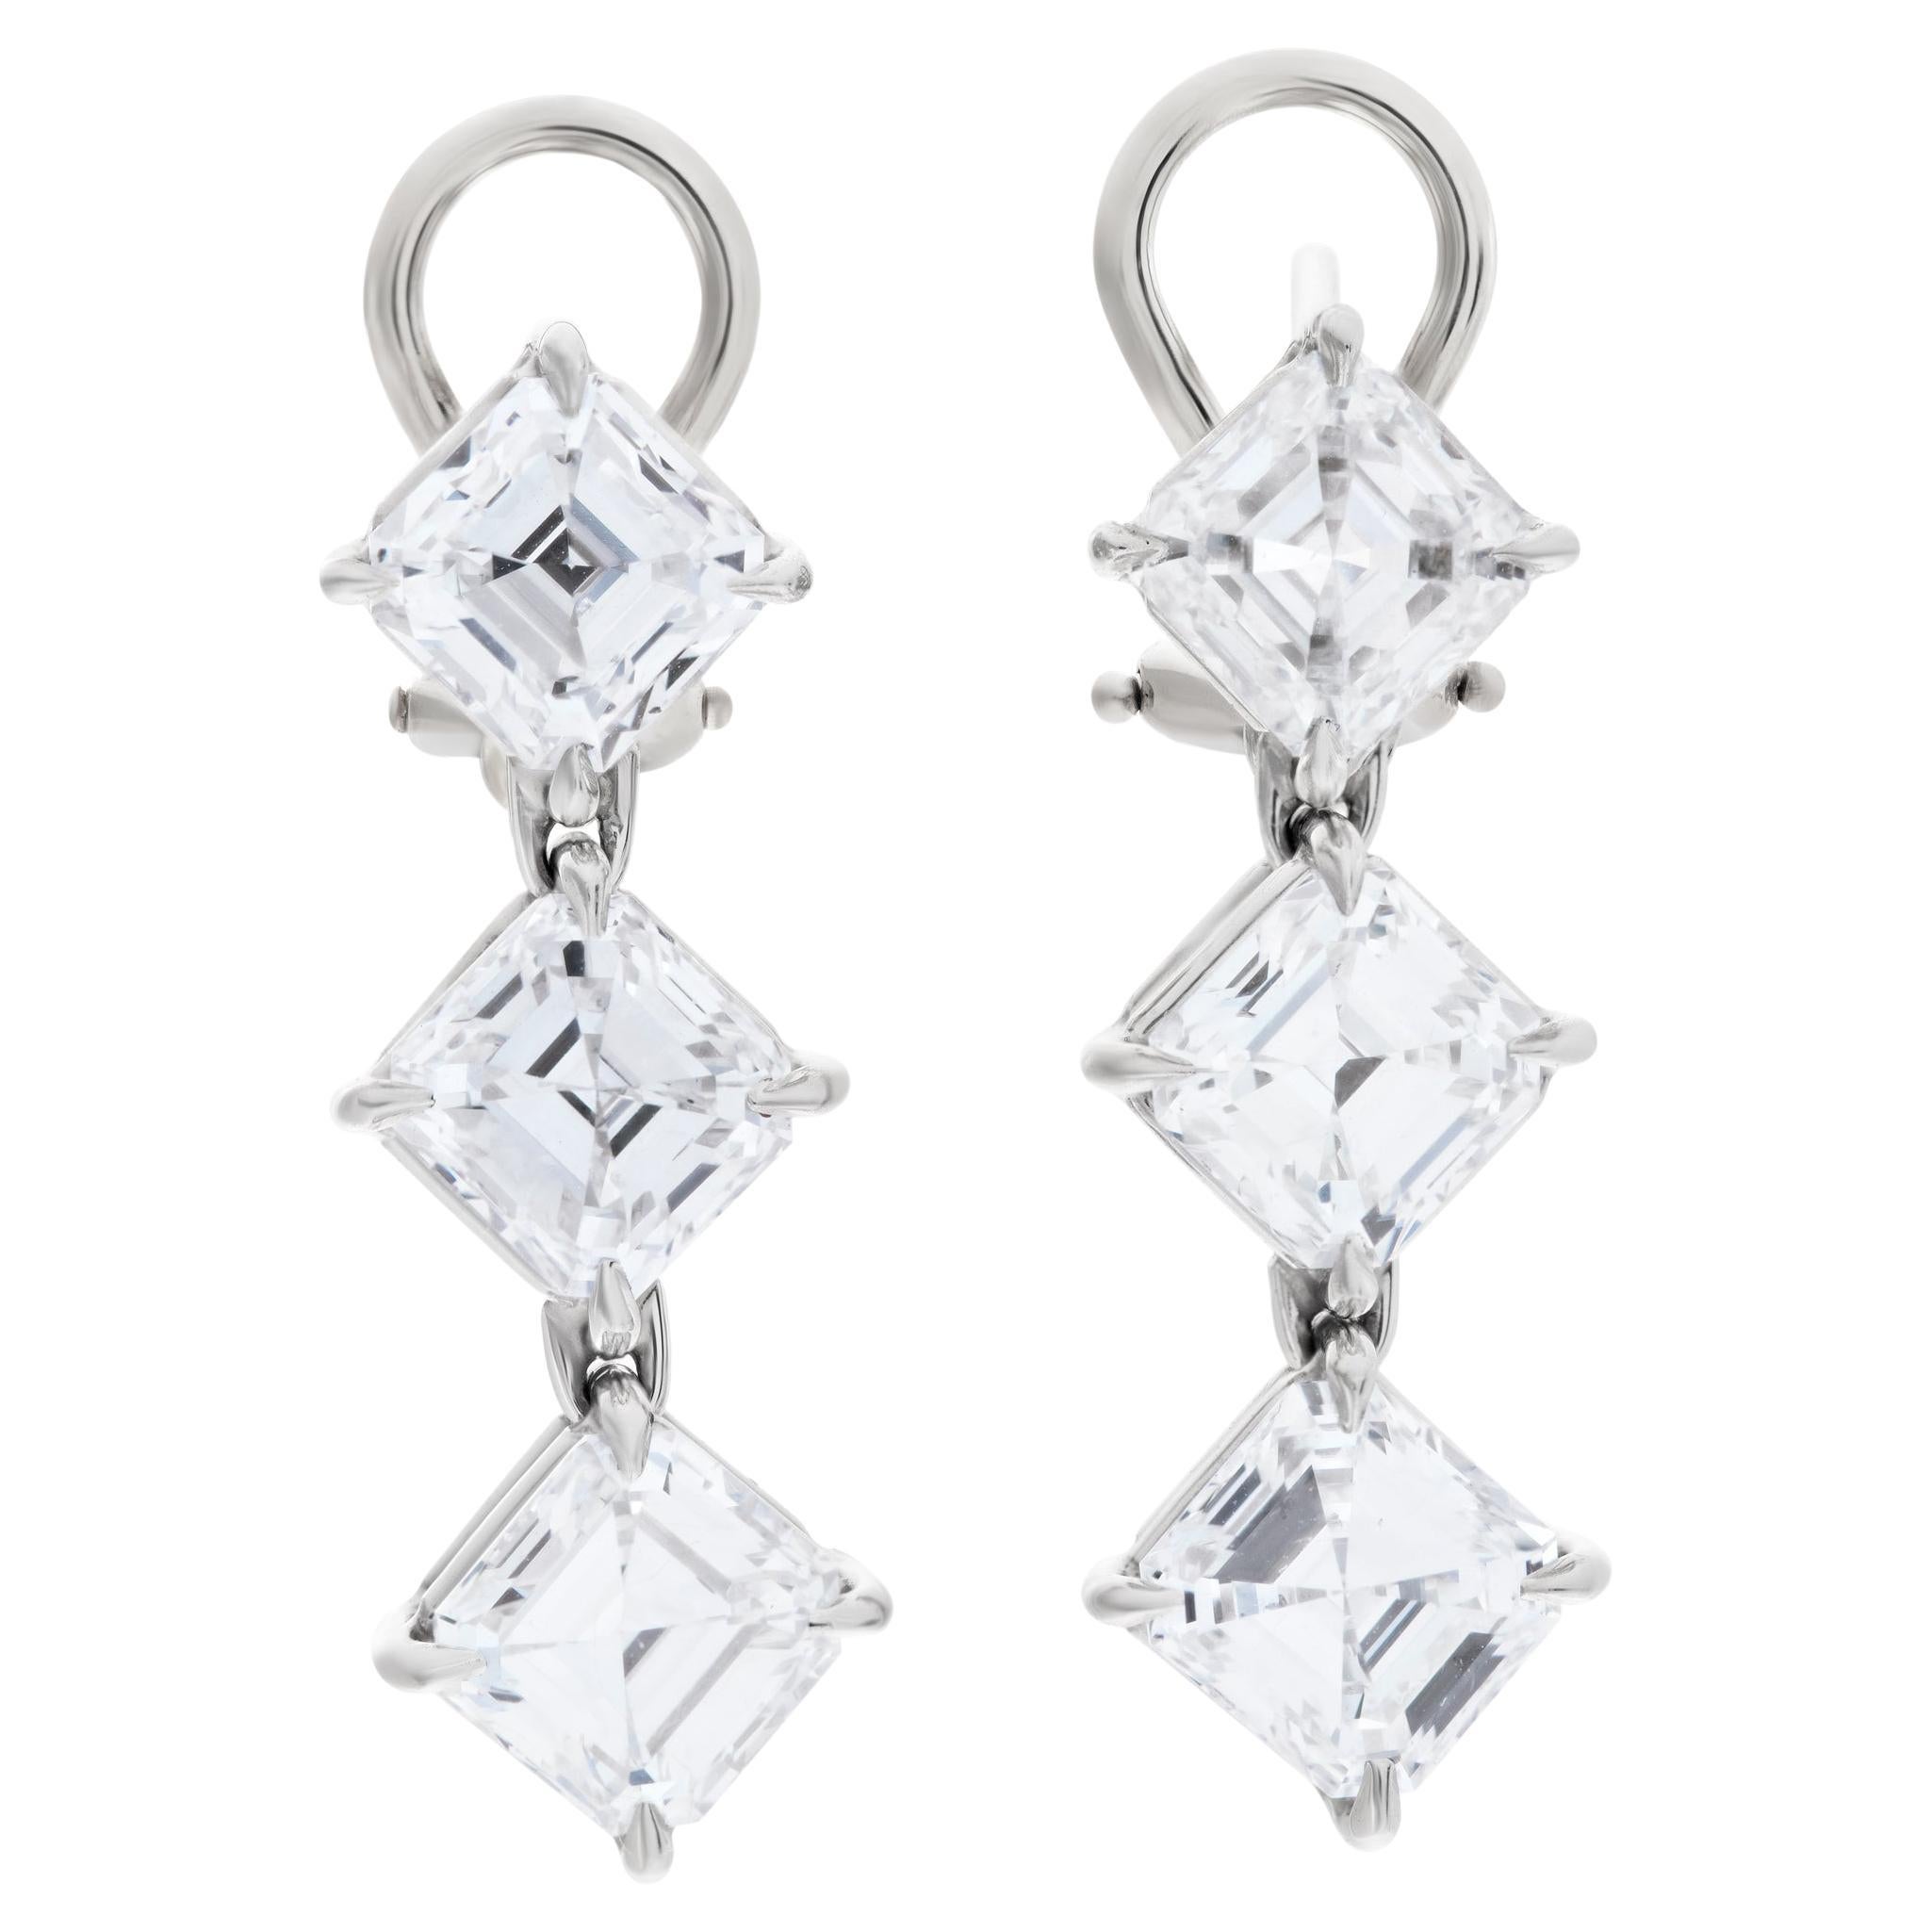 Dangling Stud Earrings, All GIA Certified, 6 Asscher Cut Diamonds Totaling 6.02